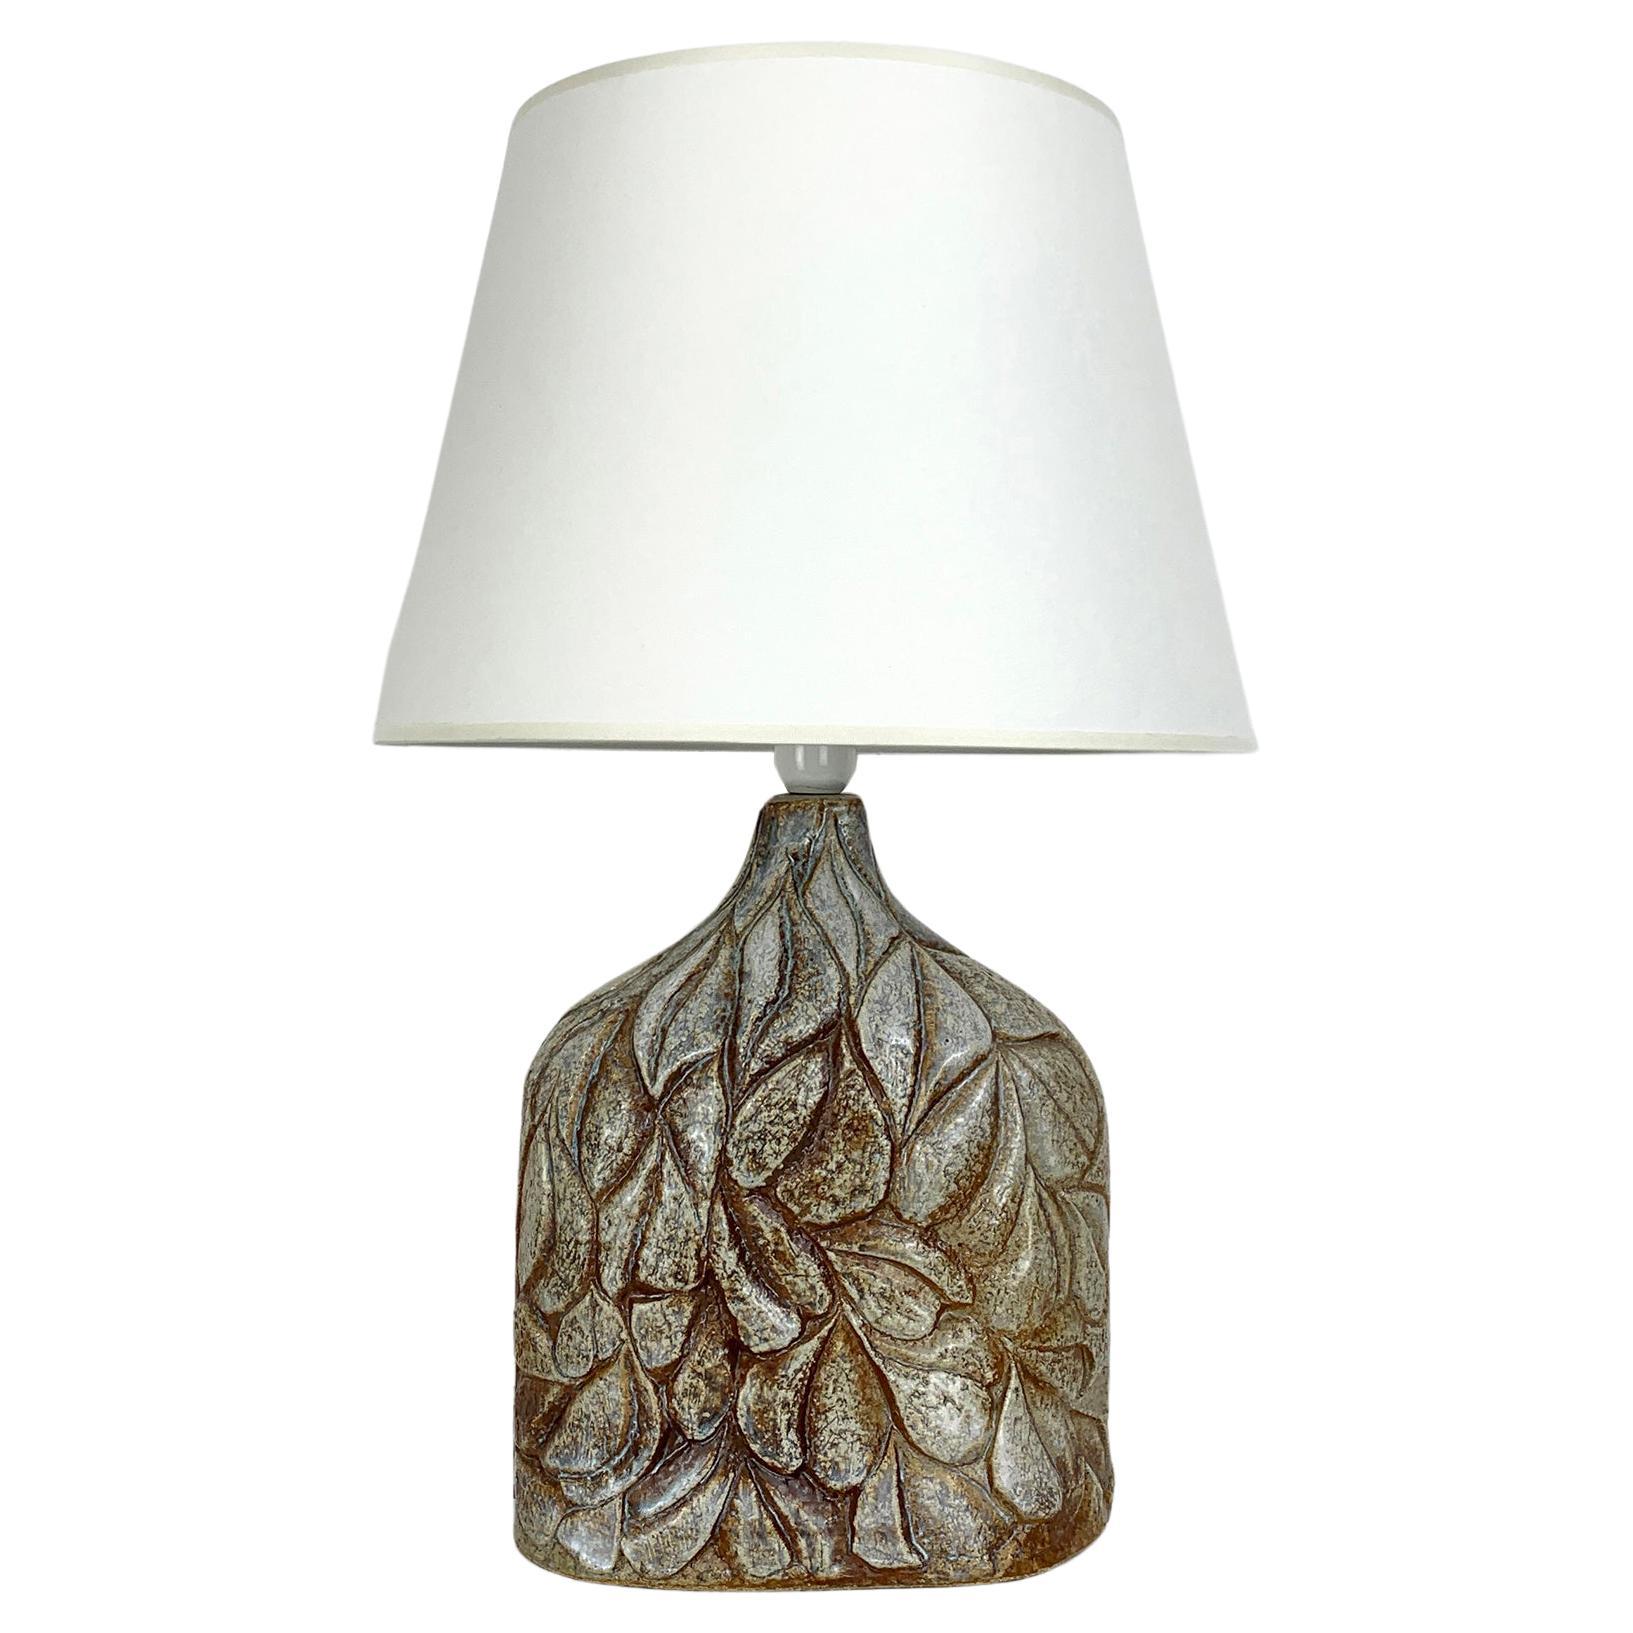 Danish Søholm Stentøj ceramic table lamp, glazed stoneware design Haico Nitzsche For Sale